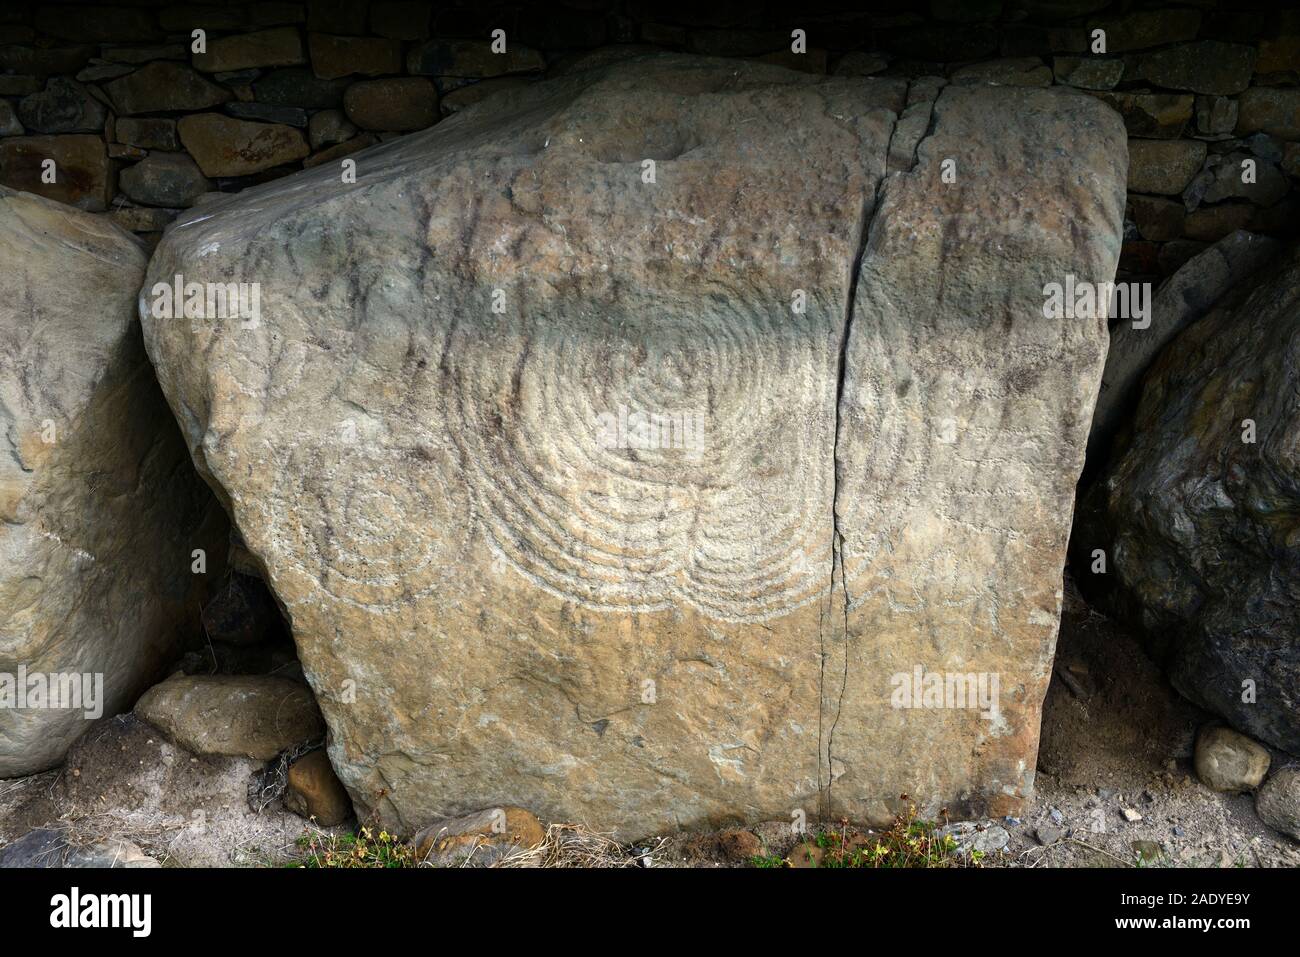 Curbstone tallas,espiral,arco,arcos,misterioso,unlnown significado, Knowth pasaje tumba neolítica, boyne valley, condado de Meath, Irlanda, patrimonio de la humanidad, Foto de stock